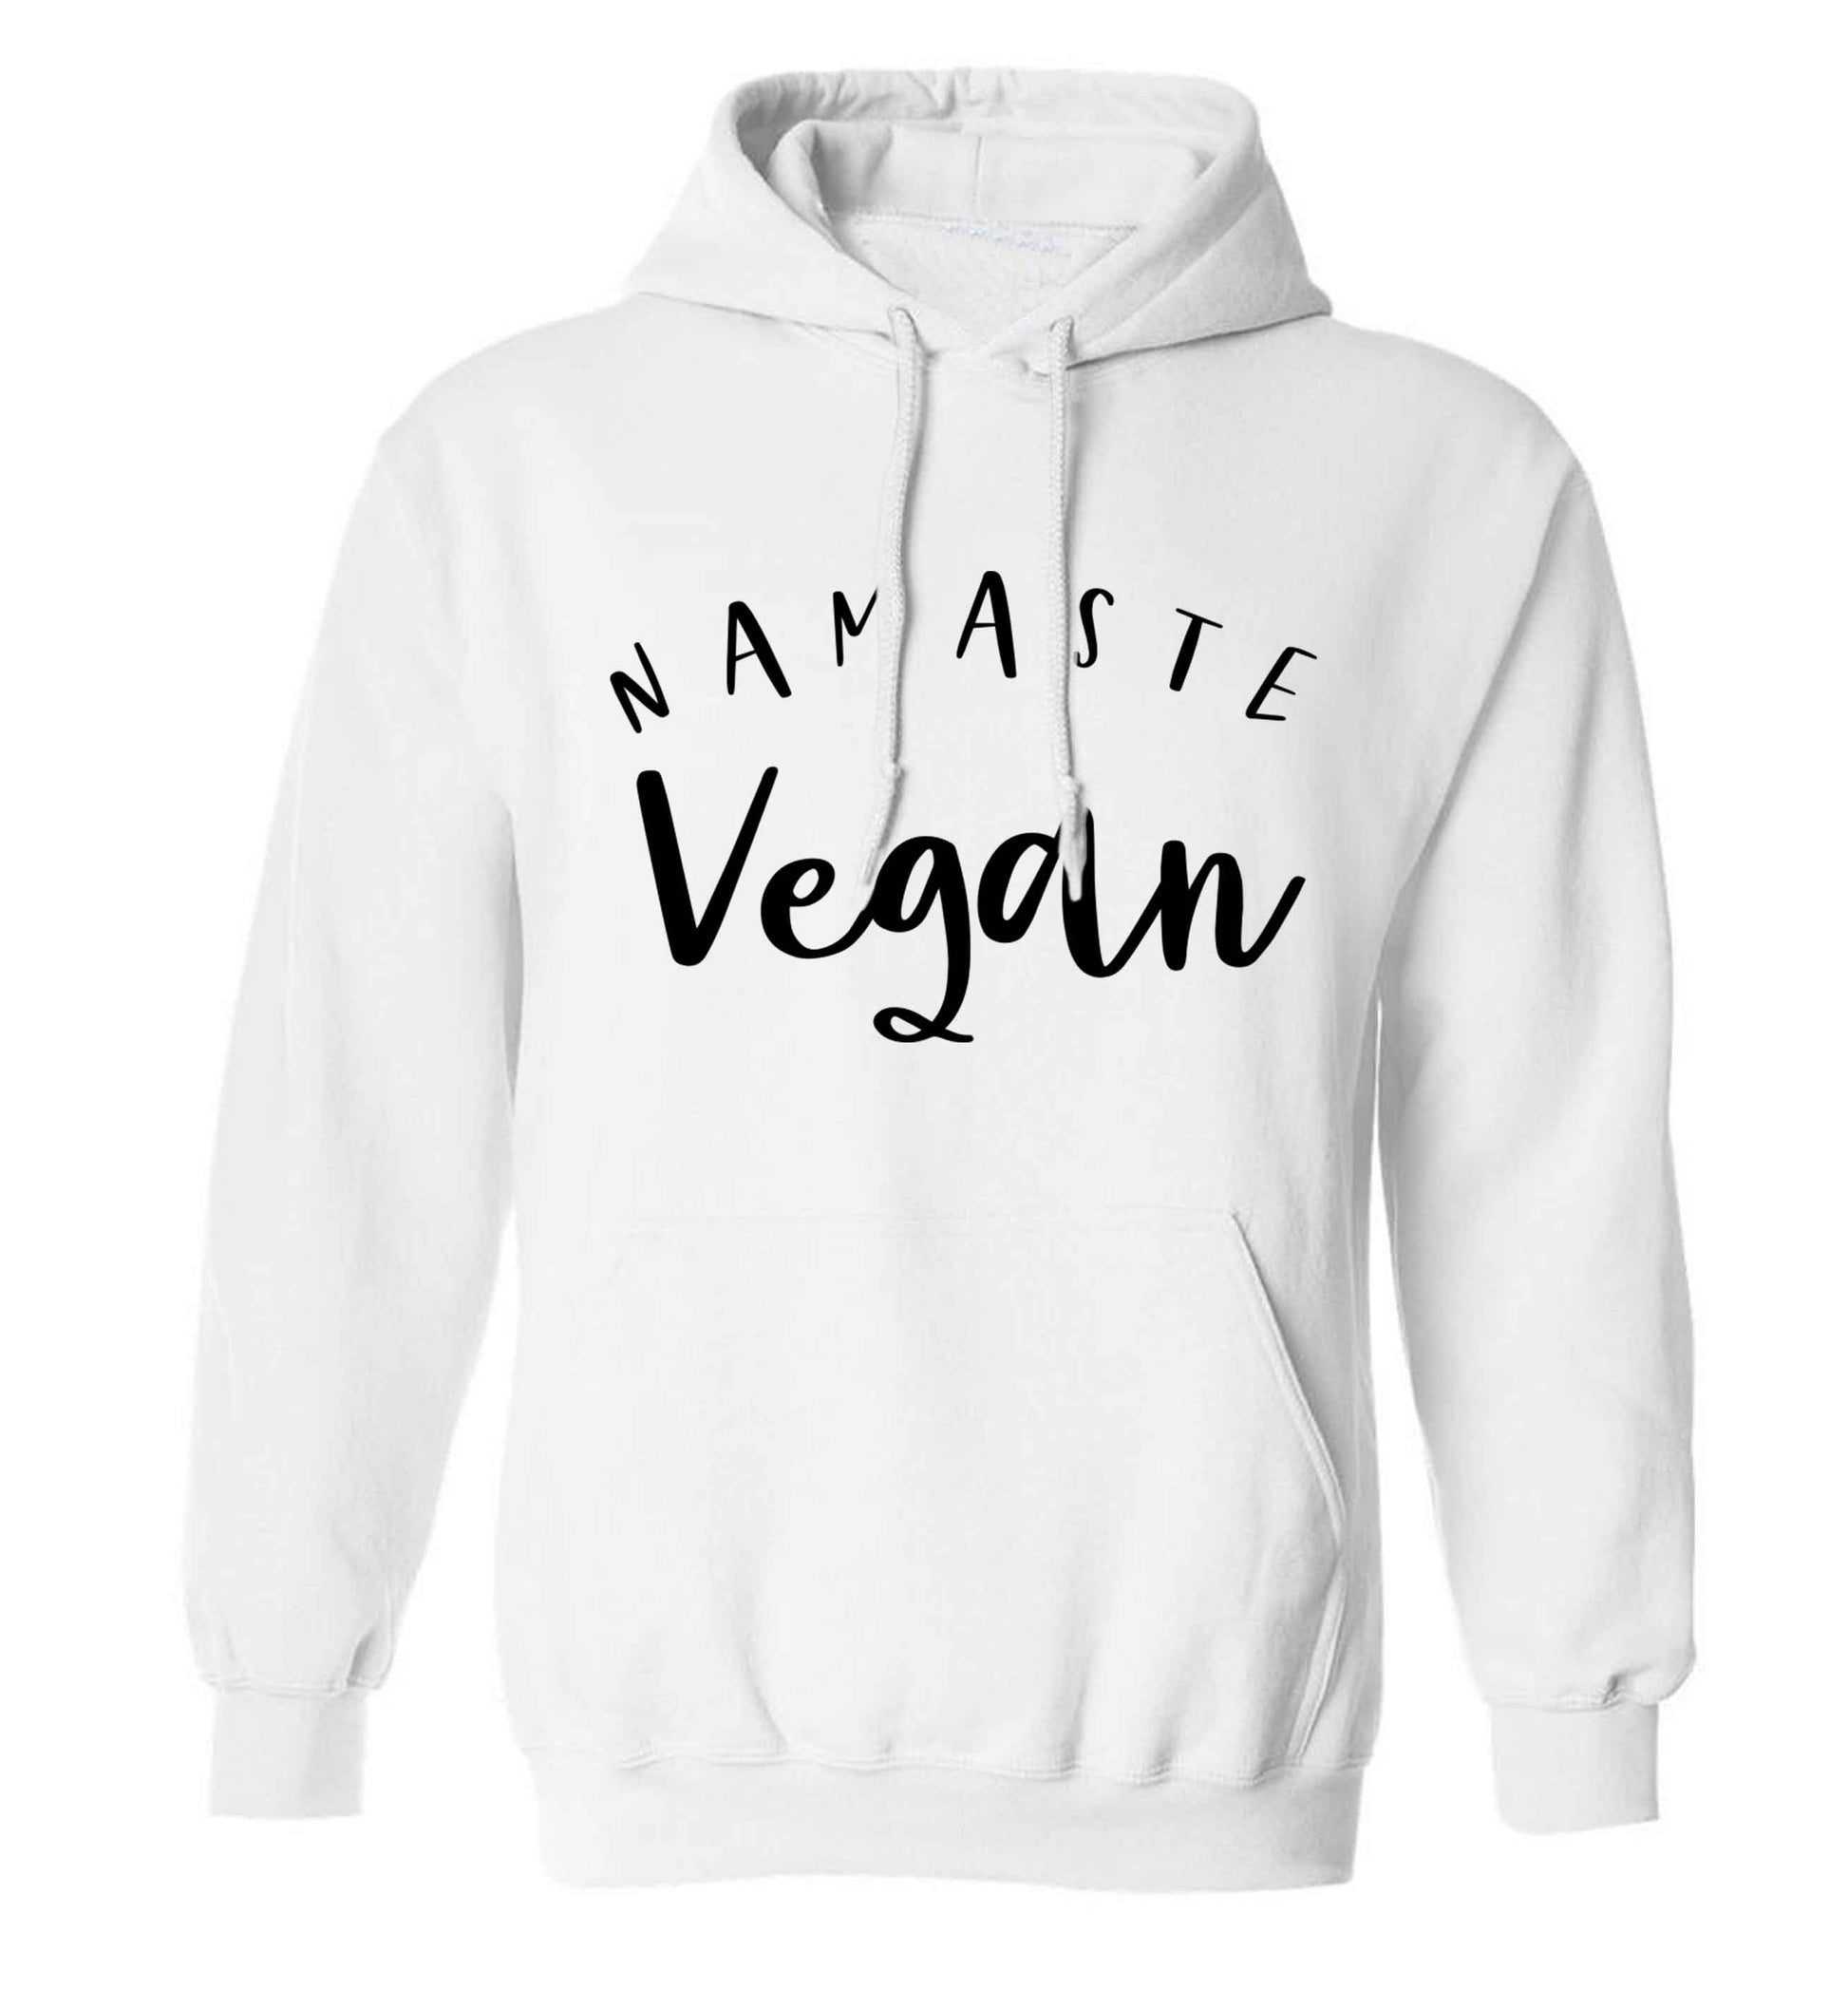 Namaste vegan adults unisex white hoodie 2XL